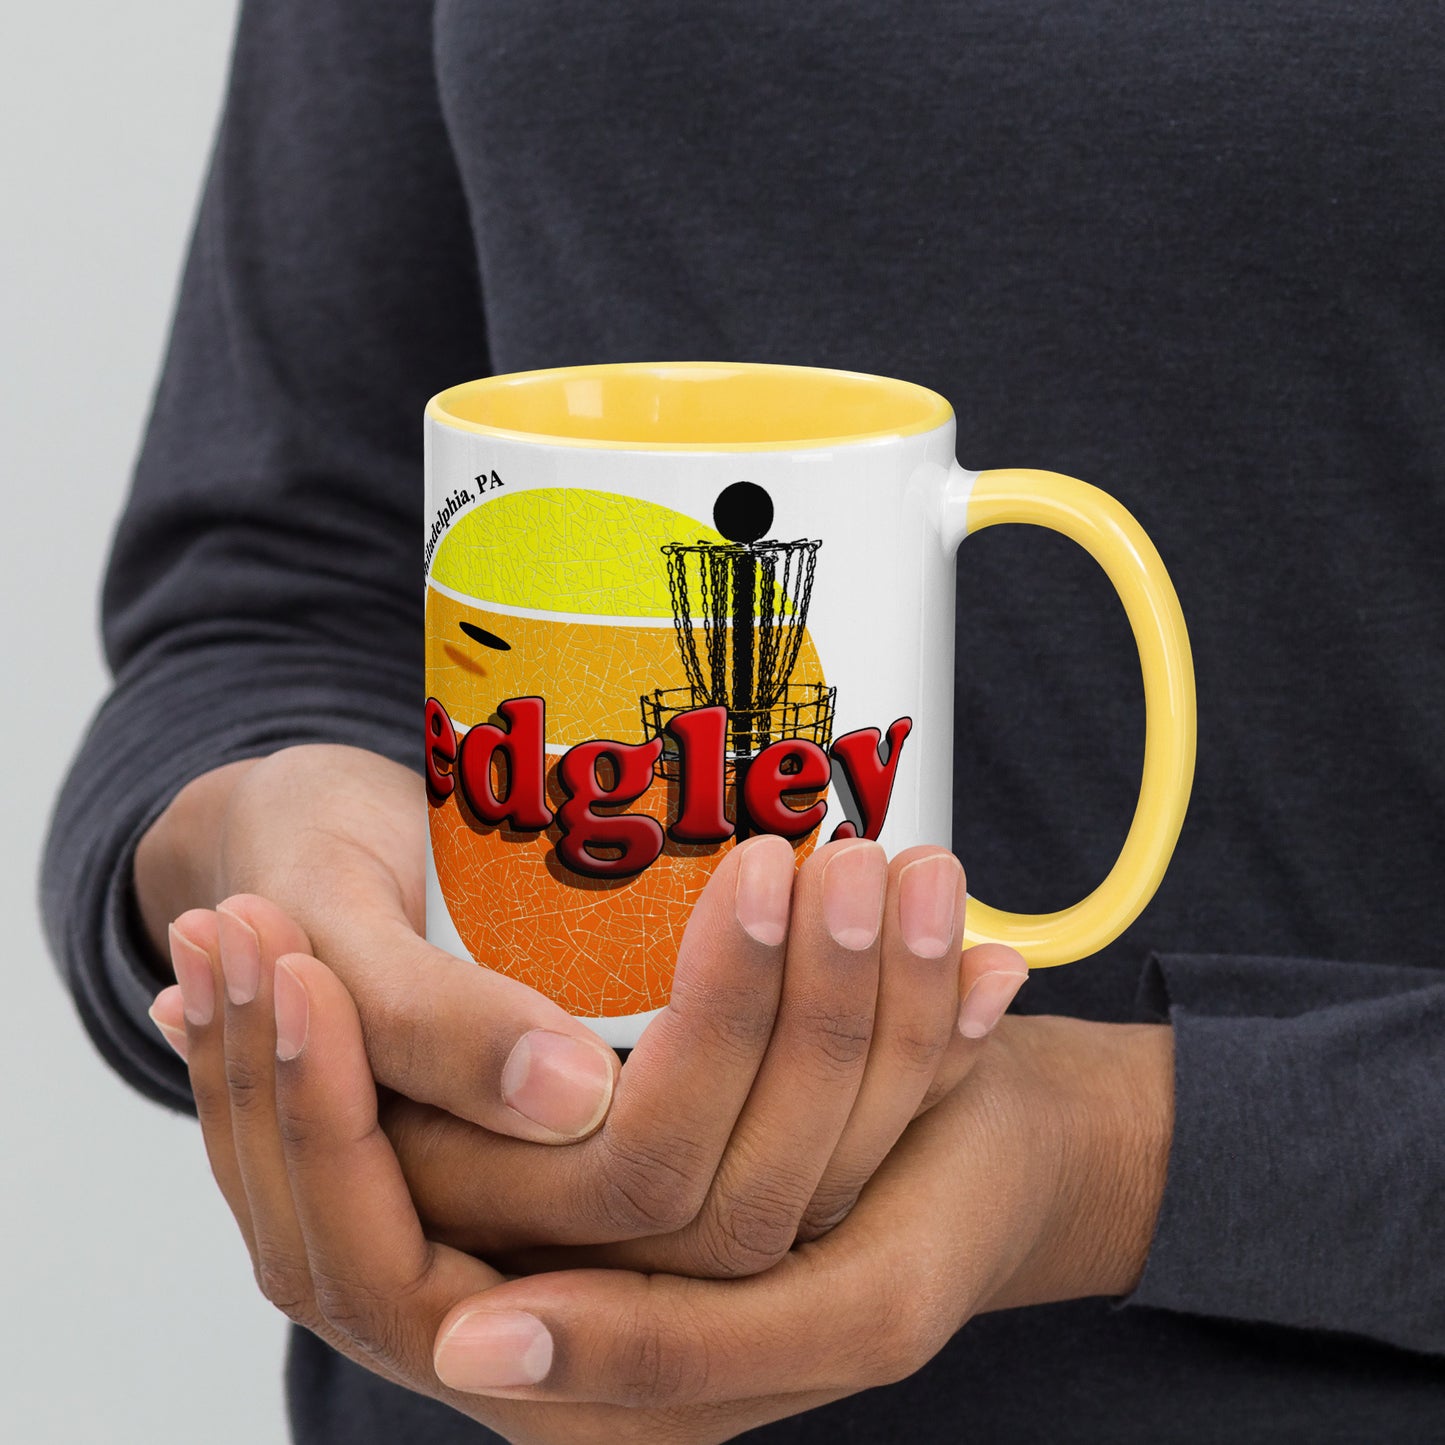 Sedgley Mug with Color Inside